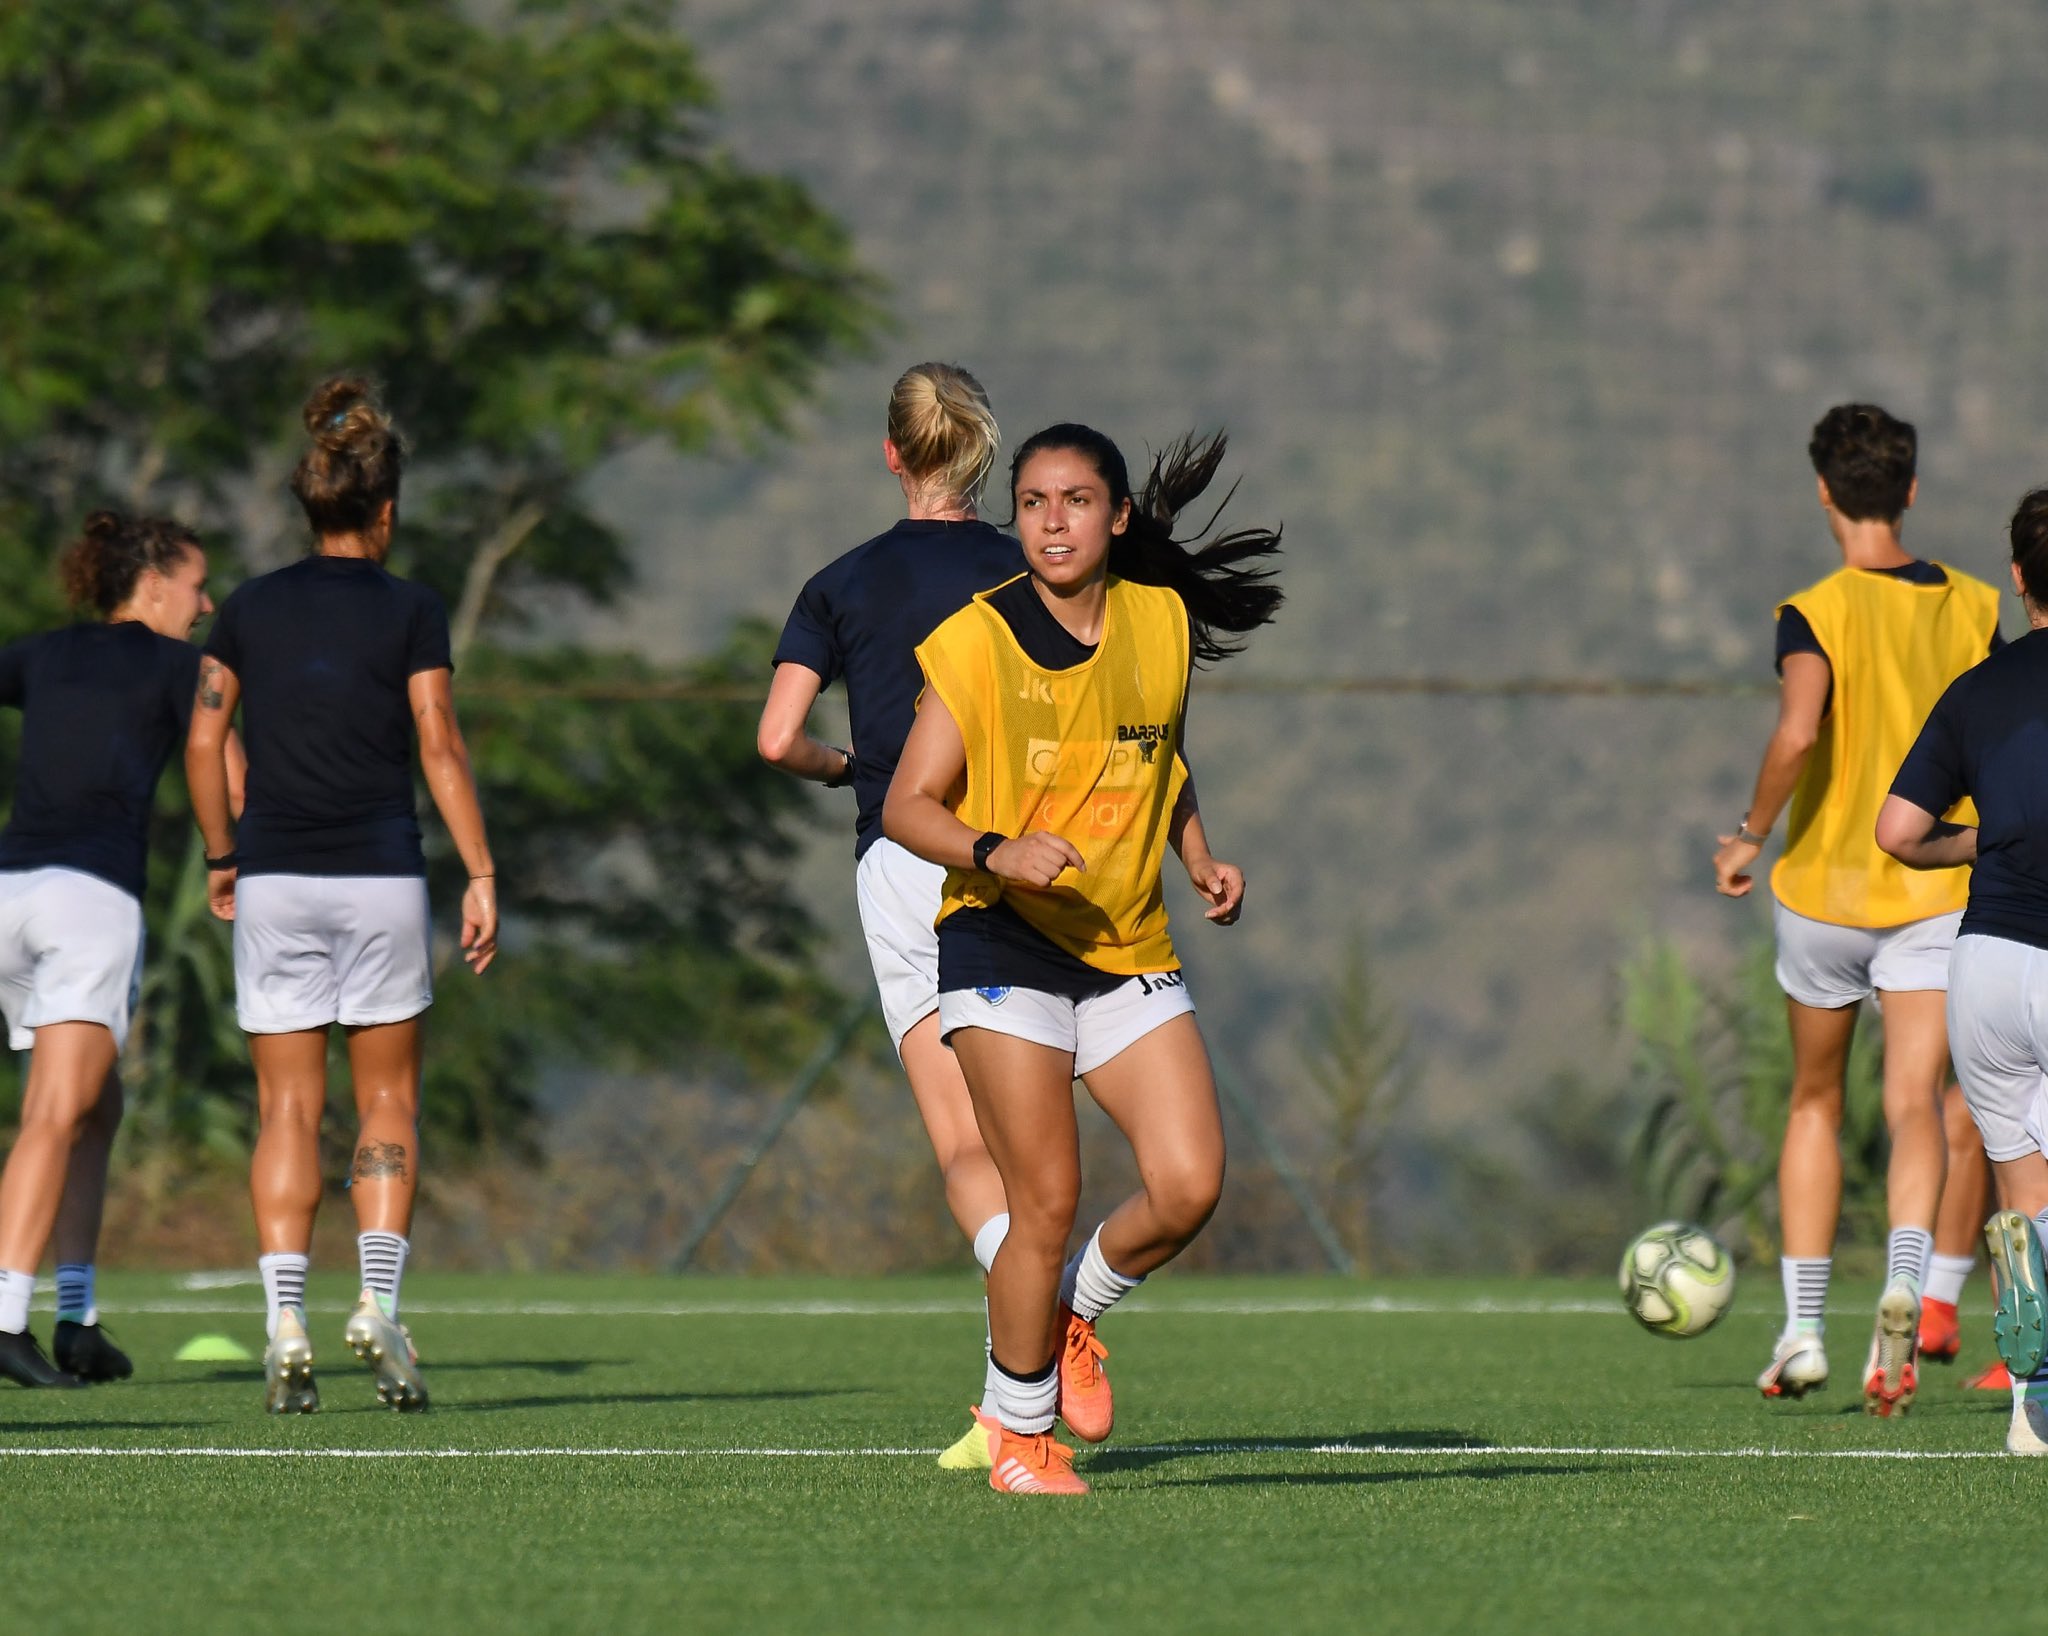 La guatemalteca Ana Lucía Martínez ya hizo su debut oficial con el Roma, en el juego en el que su equipo cayó 0-1 ante el Cesena de la Serie B italiana. (Foto Prensa Libre: Heremoteca)